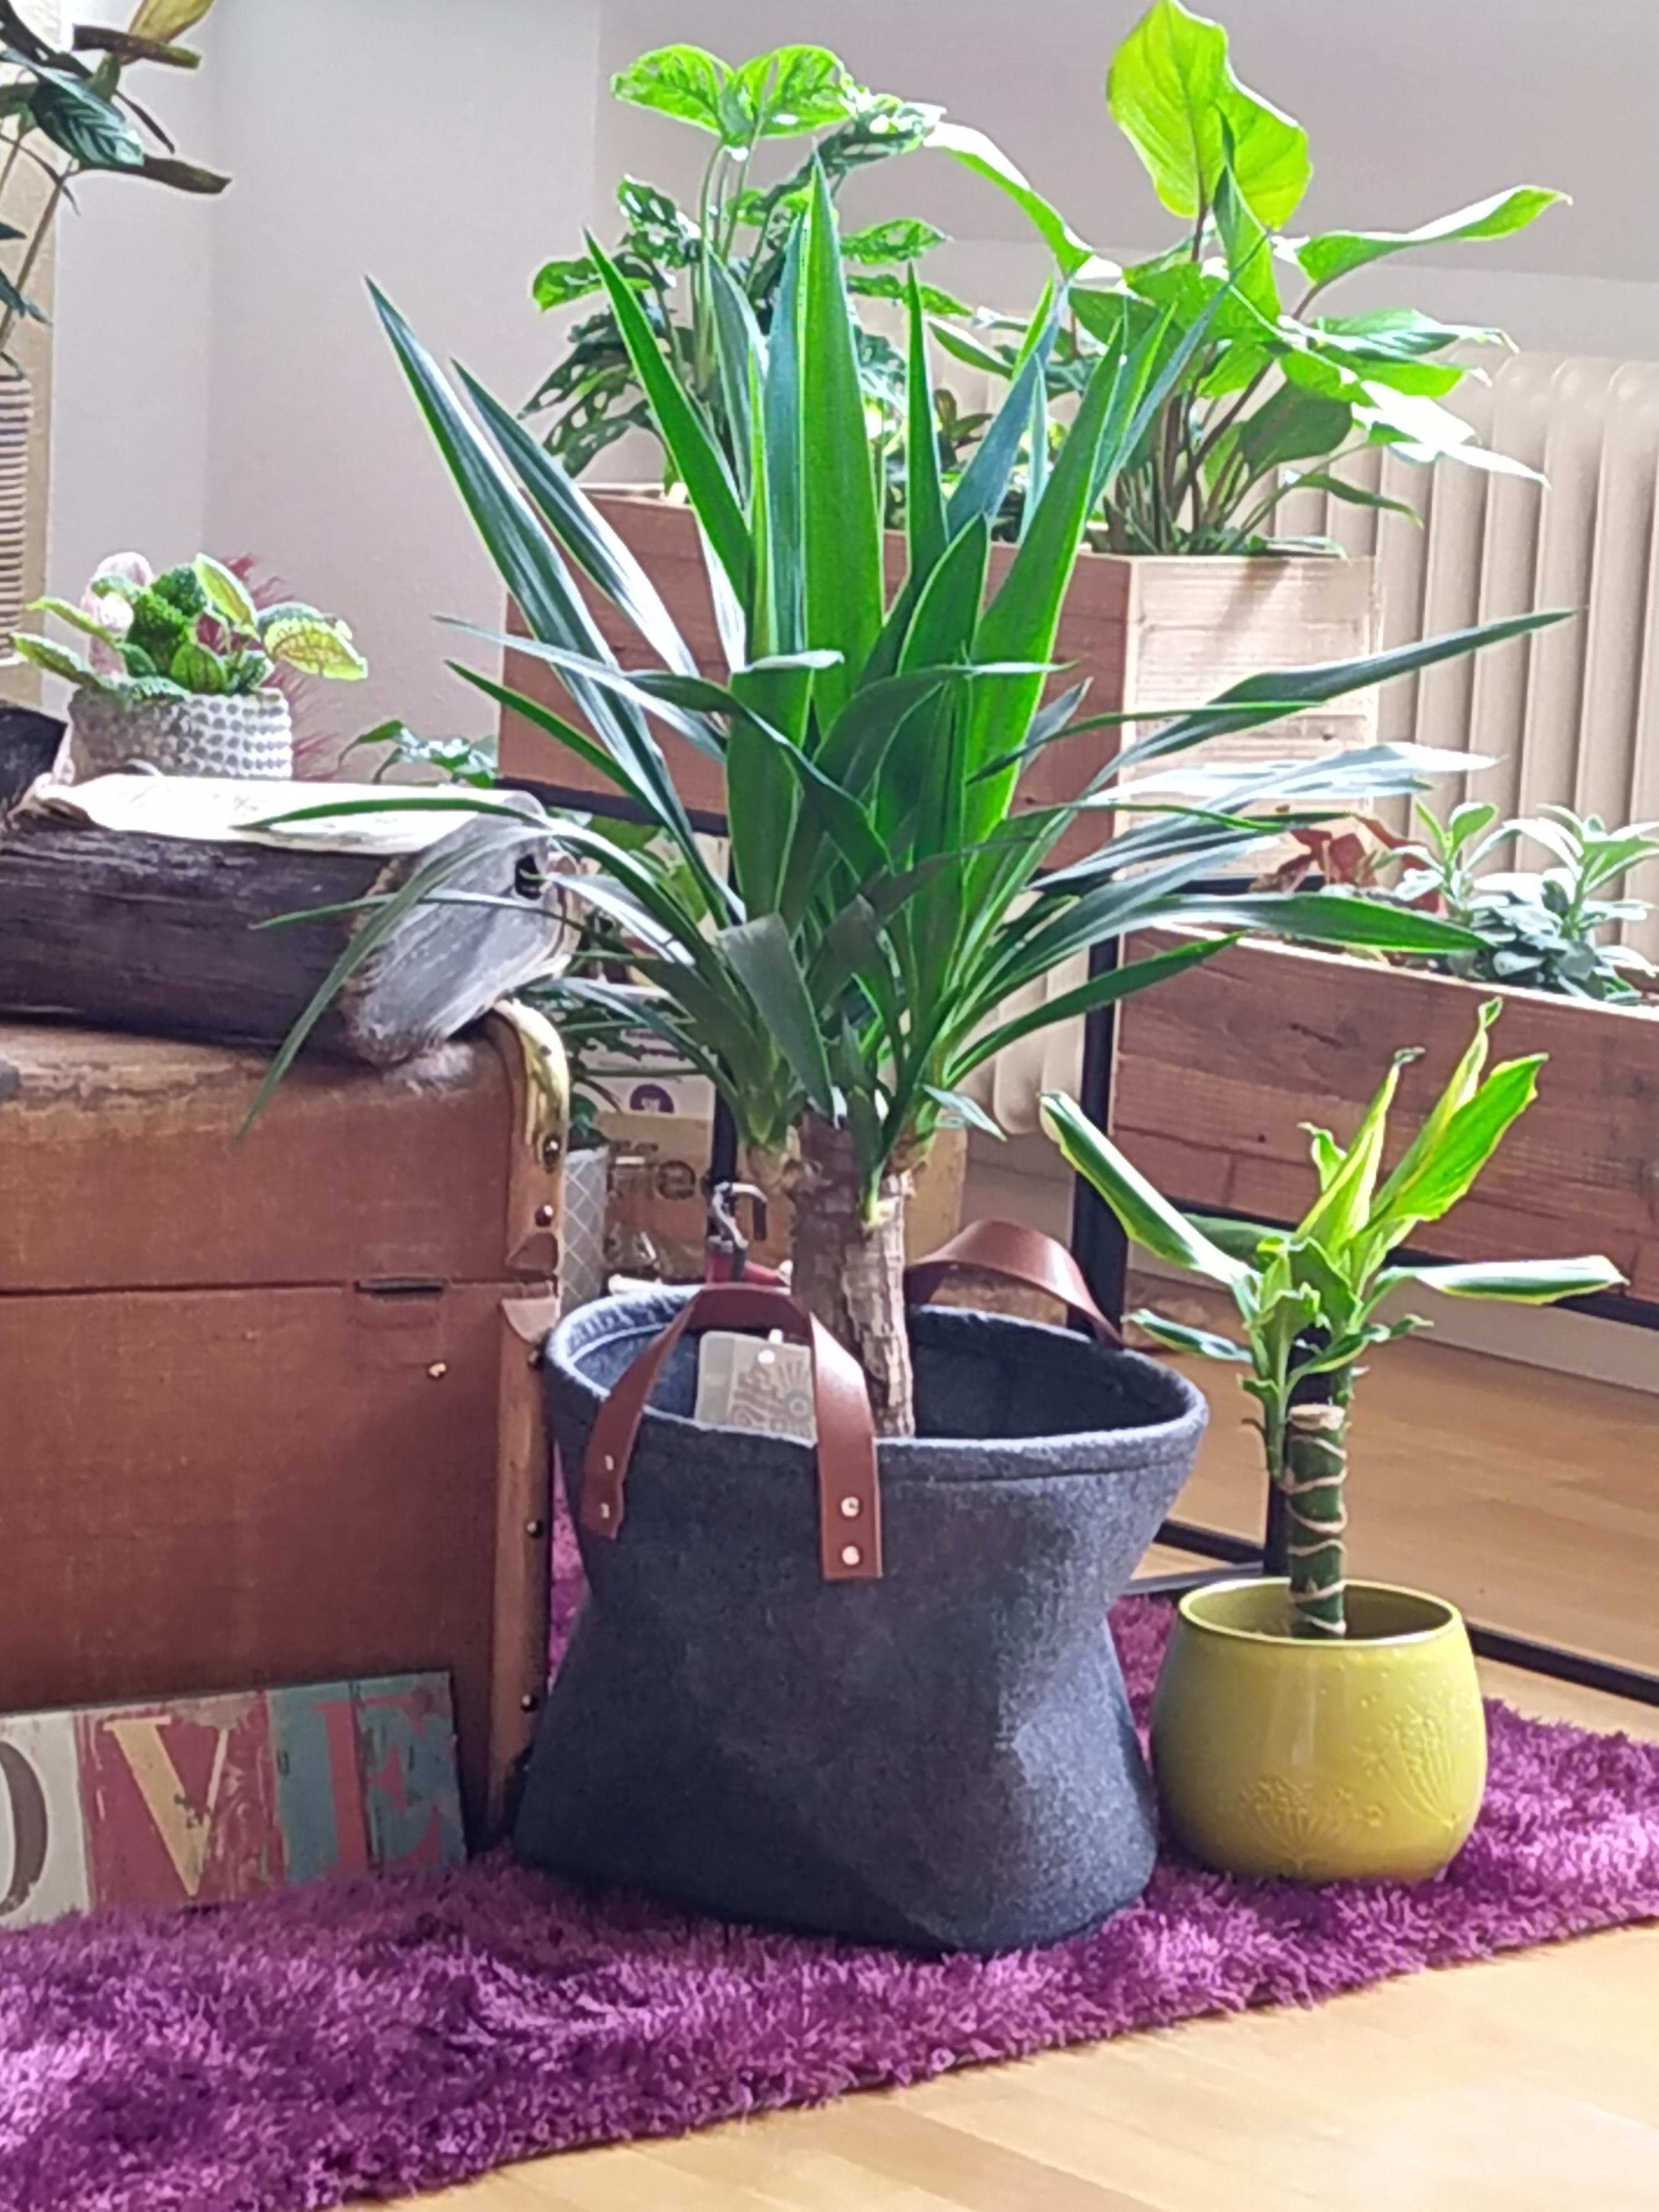 Liebe meine vielen Pflanzen.
#pflanzen #grün #livingroom #wohnzimmer #entspannung #pflanzenliebe #couchliebe